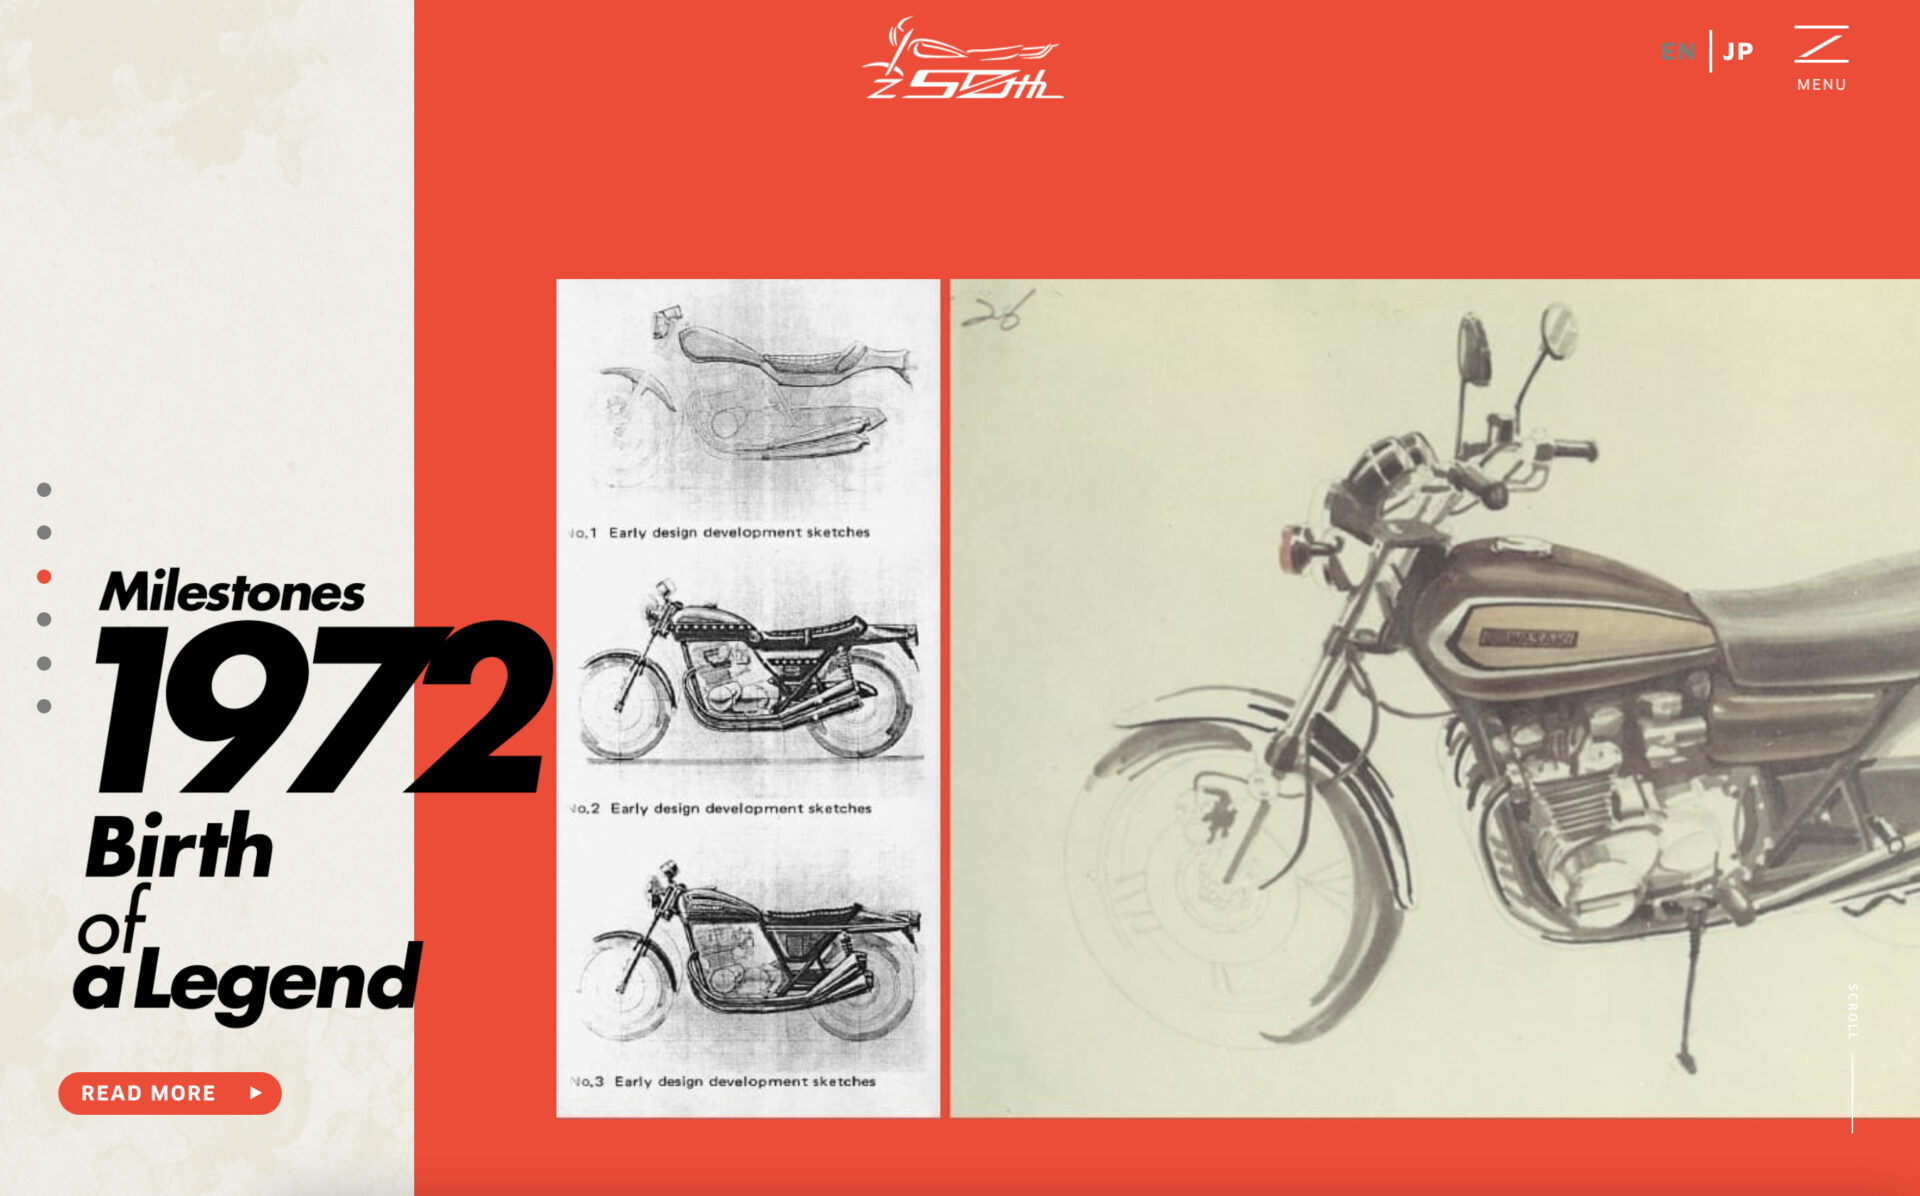 Z50周年！アニバーサリー公式サイトが公開されました！ – Z900RSまとめ